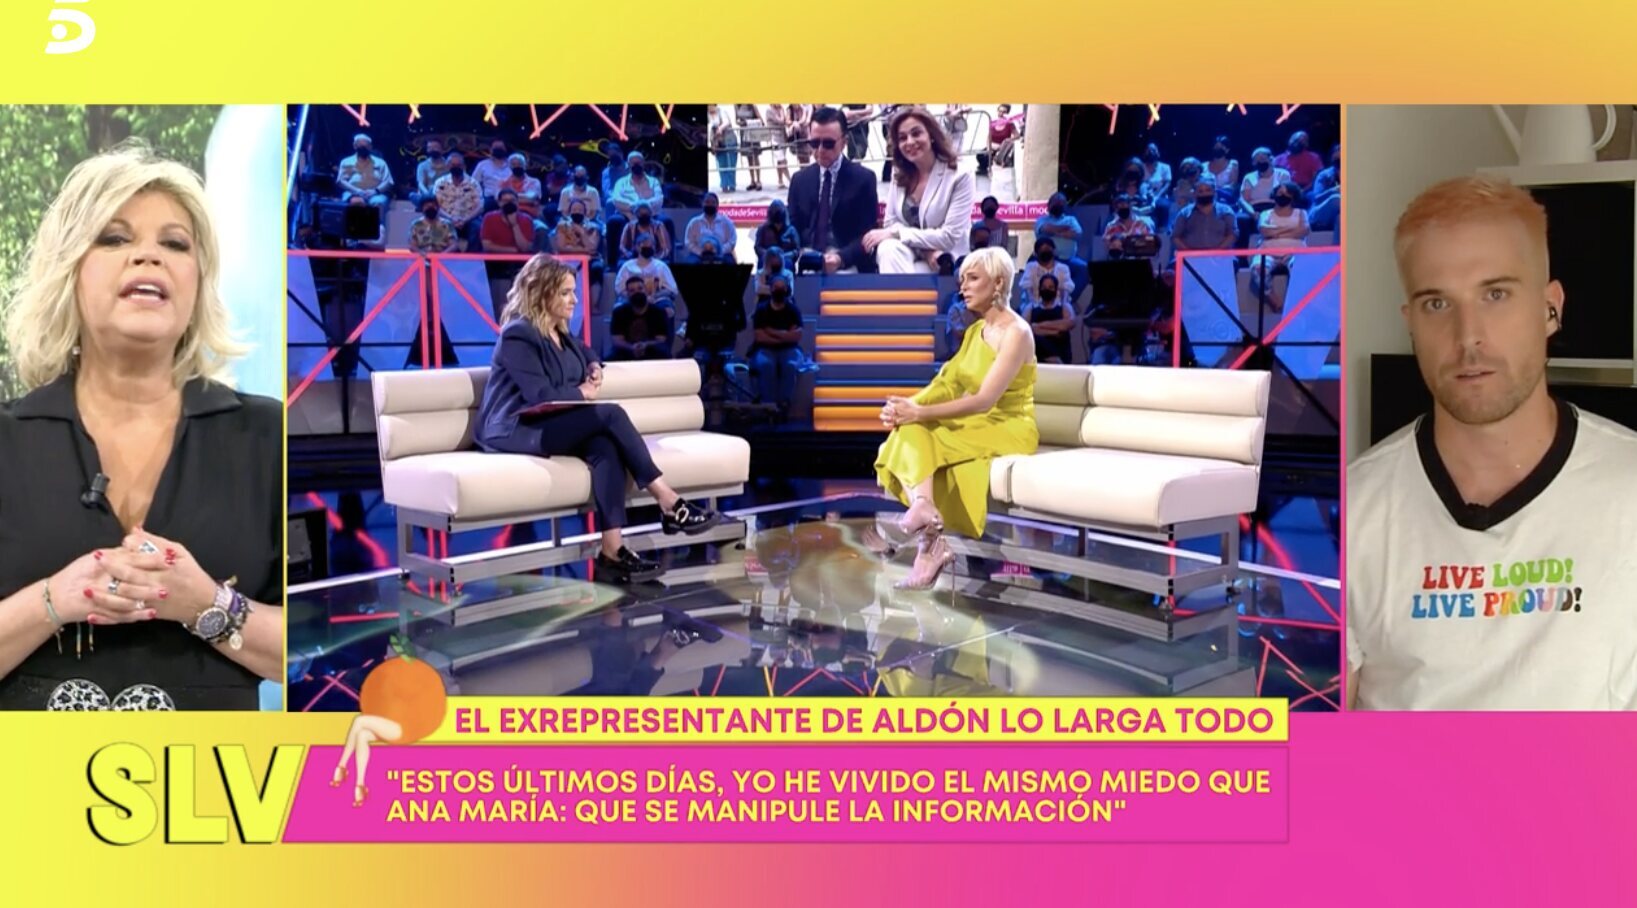 Marc Florensa hizo apariciones en televisión hablando de Ana María Aldón | Foto: Telecinco.es